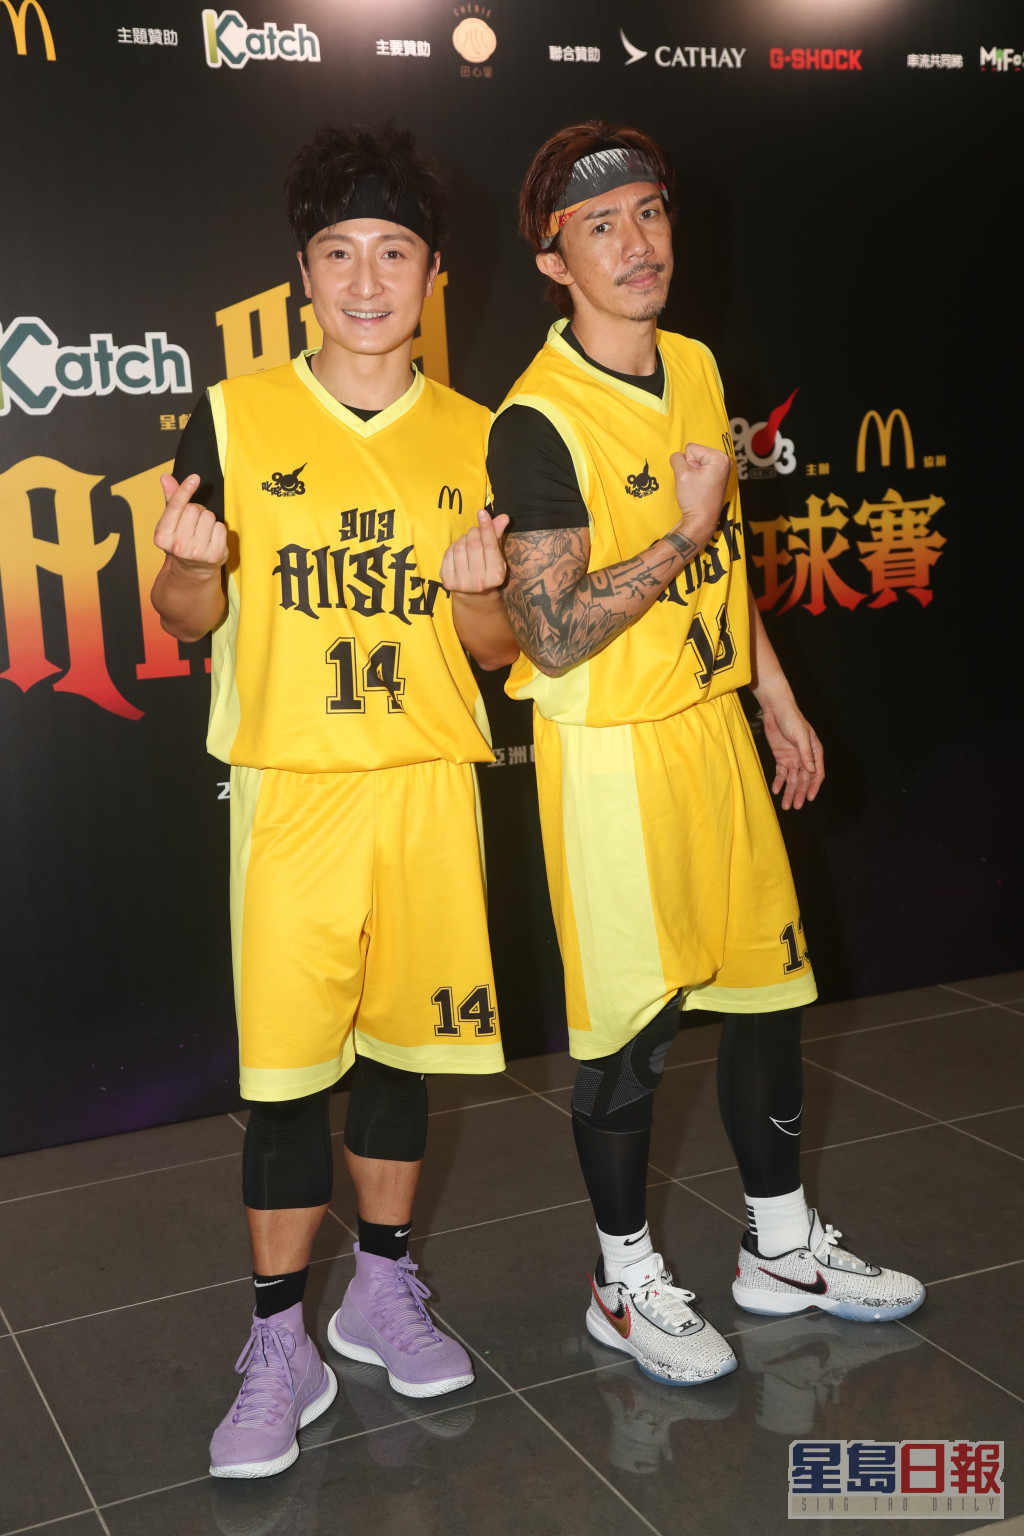 张继聪（阿聪）、方力申（小方）及冯允谦（Jay）分别代表歌星队及DJ队的篮球赛。